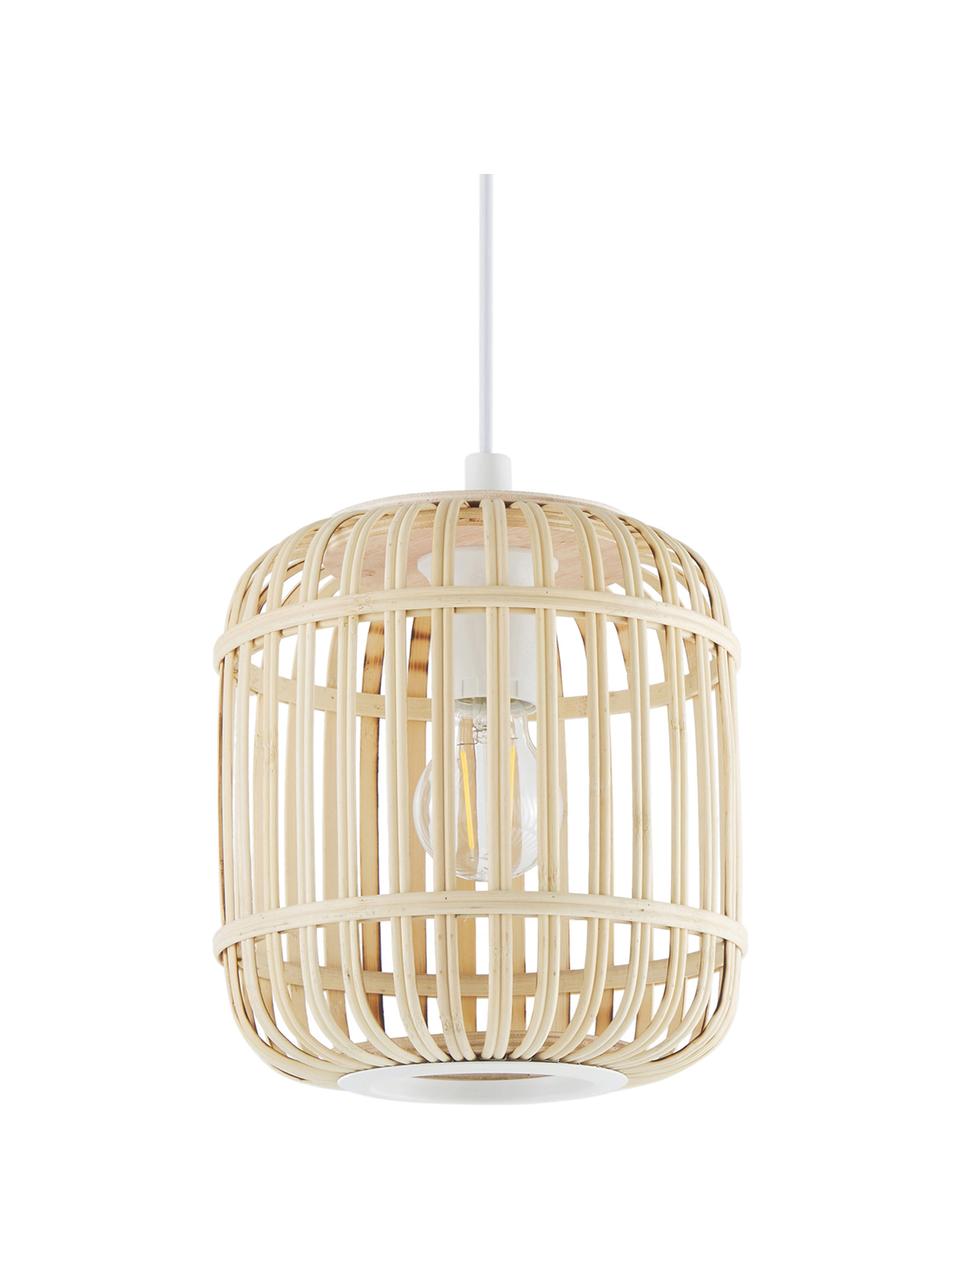 Lampa wisząca z drewna bambusowego Adam, Biały, jasny brązowy, Ø 21 x W 24 cm